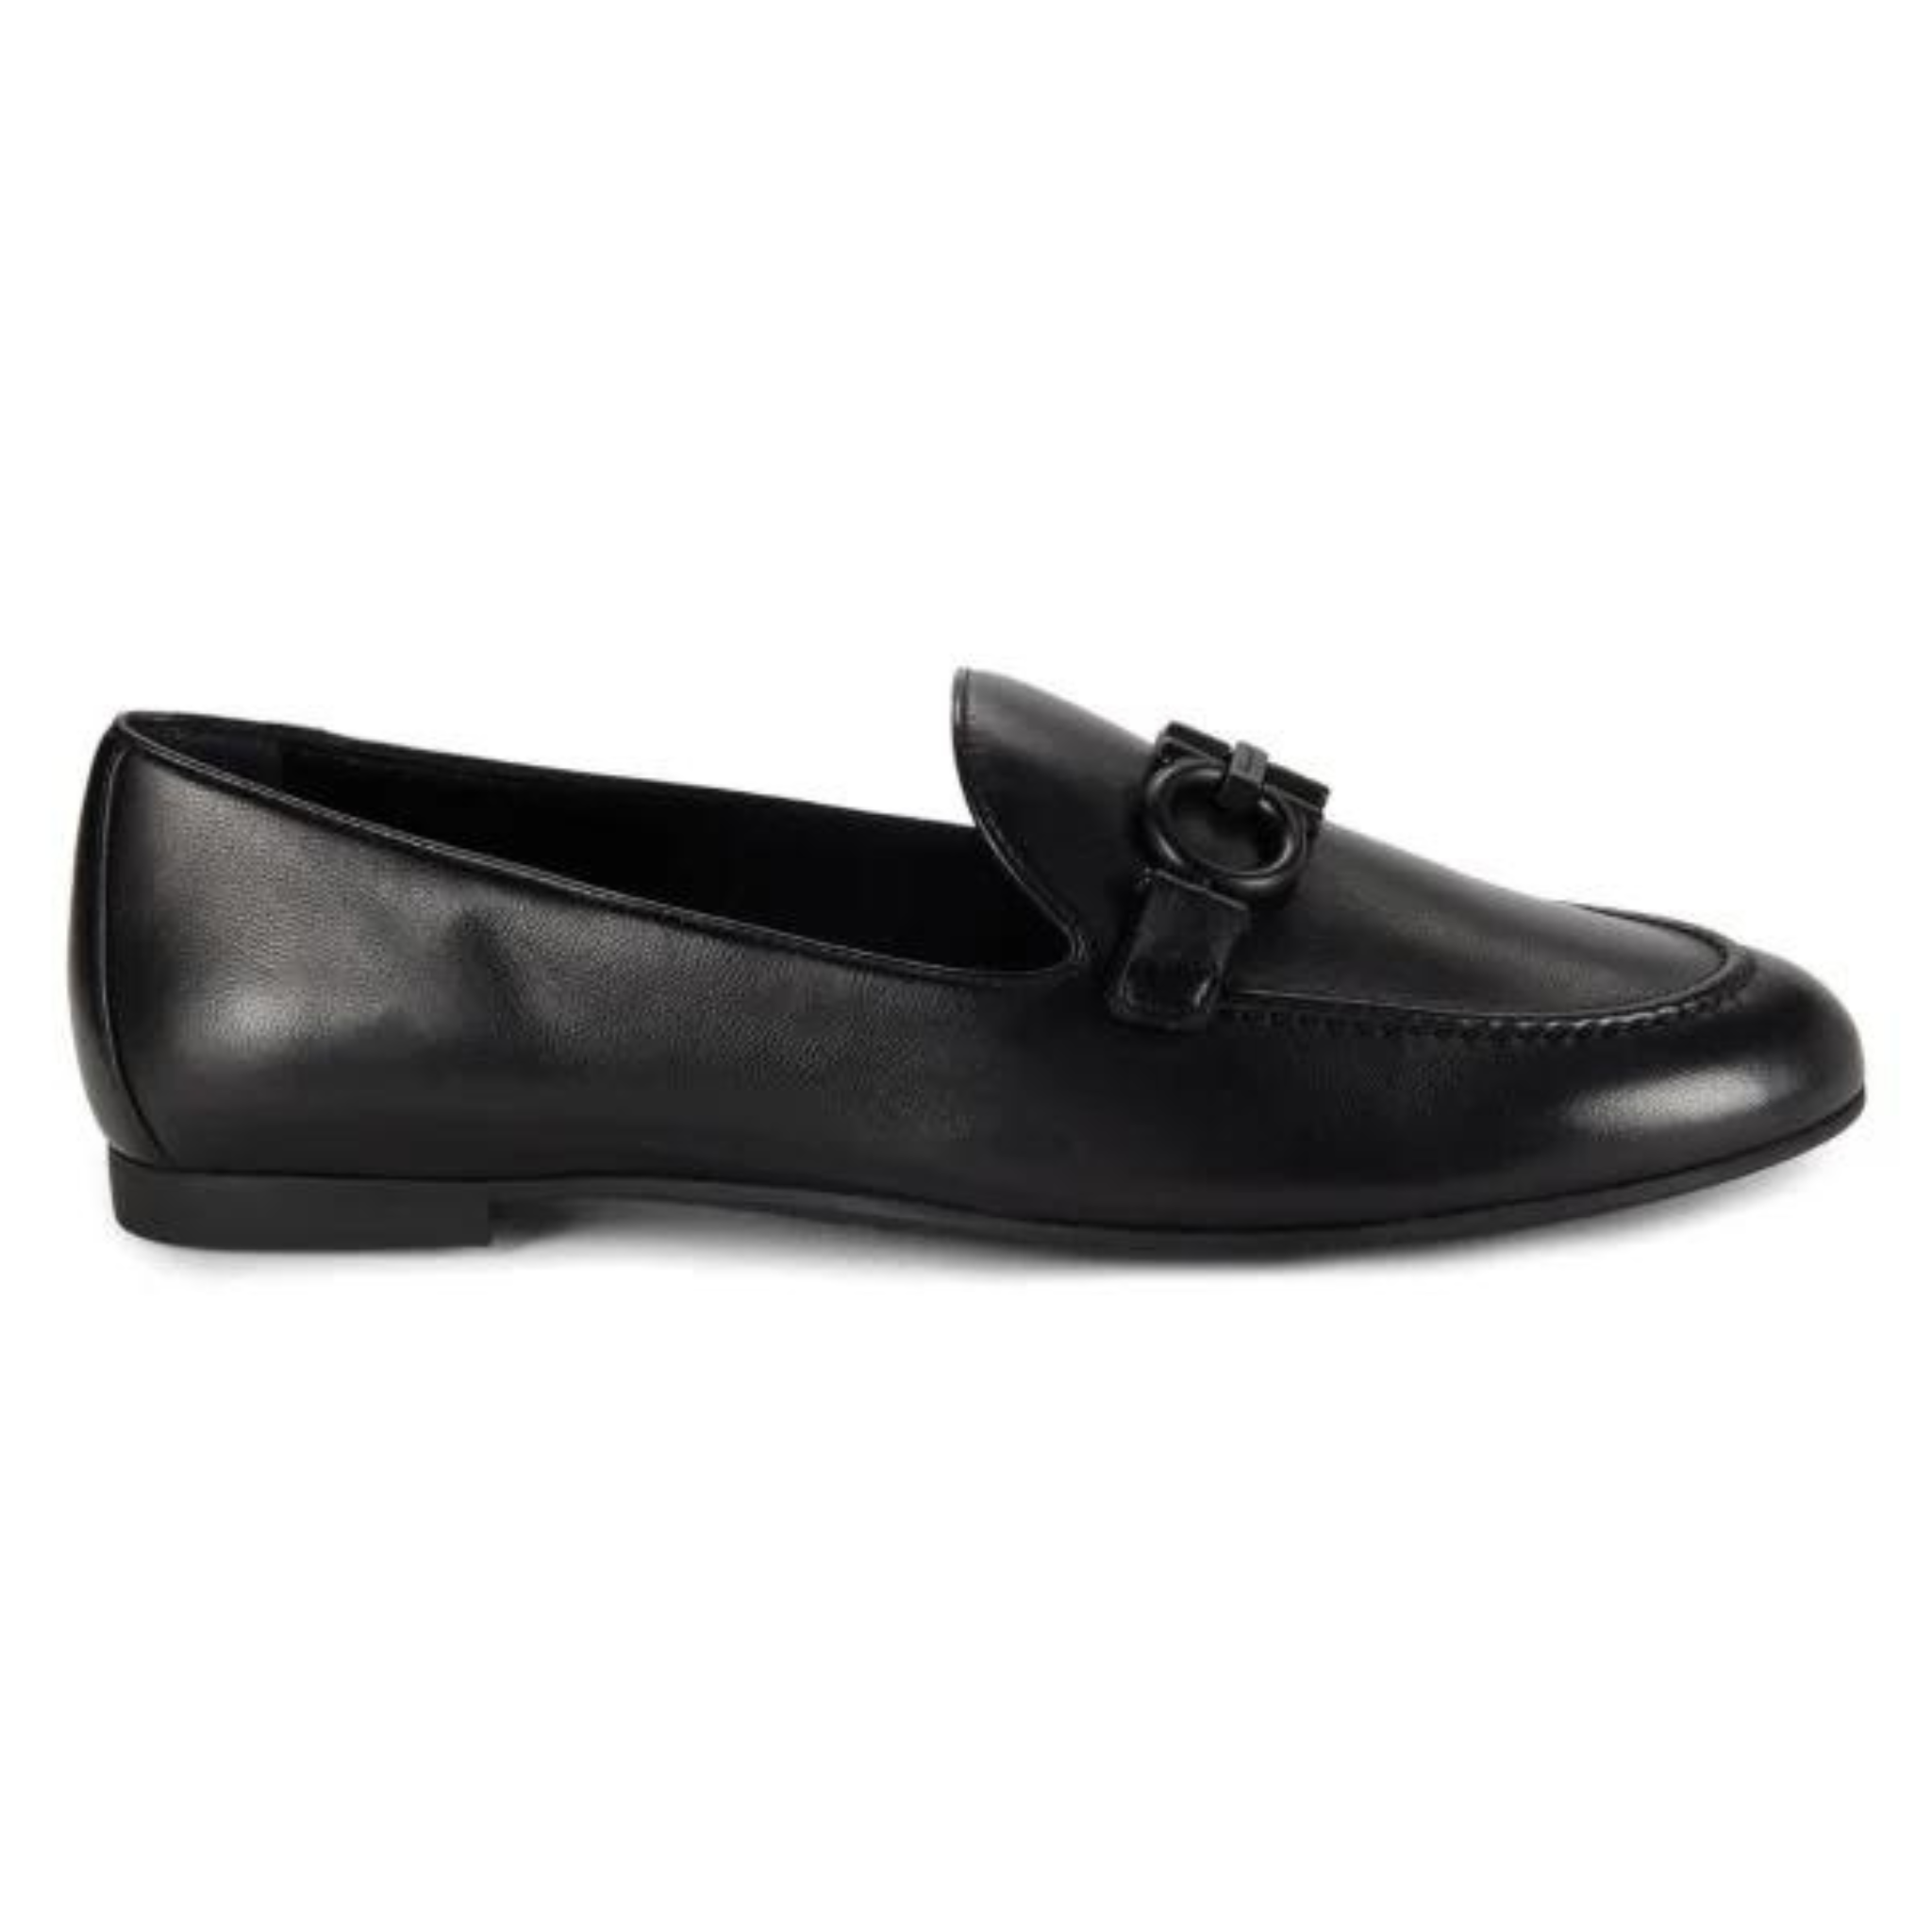 Ferragamo Trifoglio Women's Apron Toe Leather Loafers